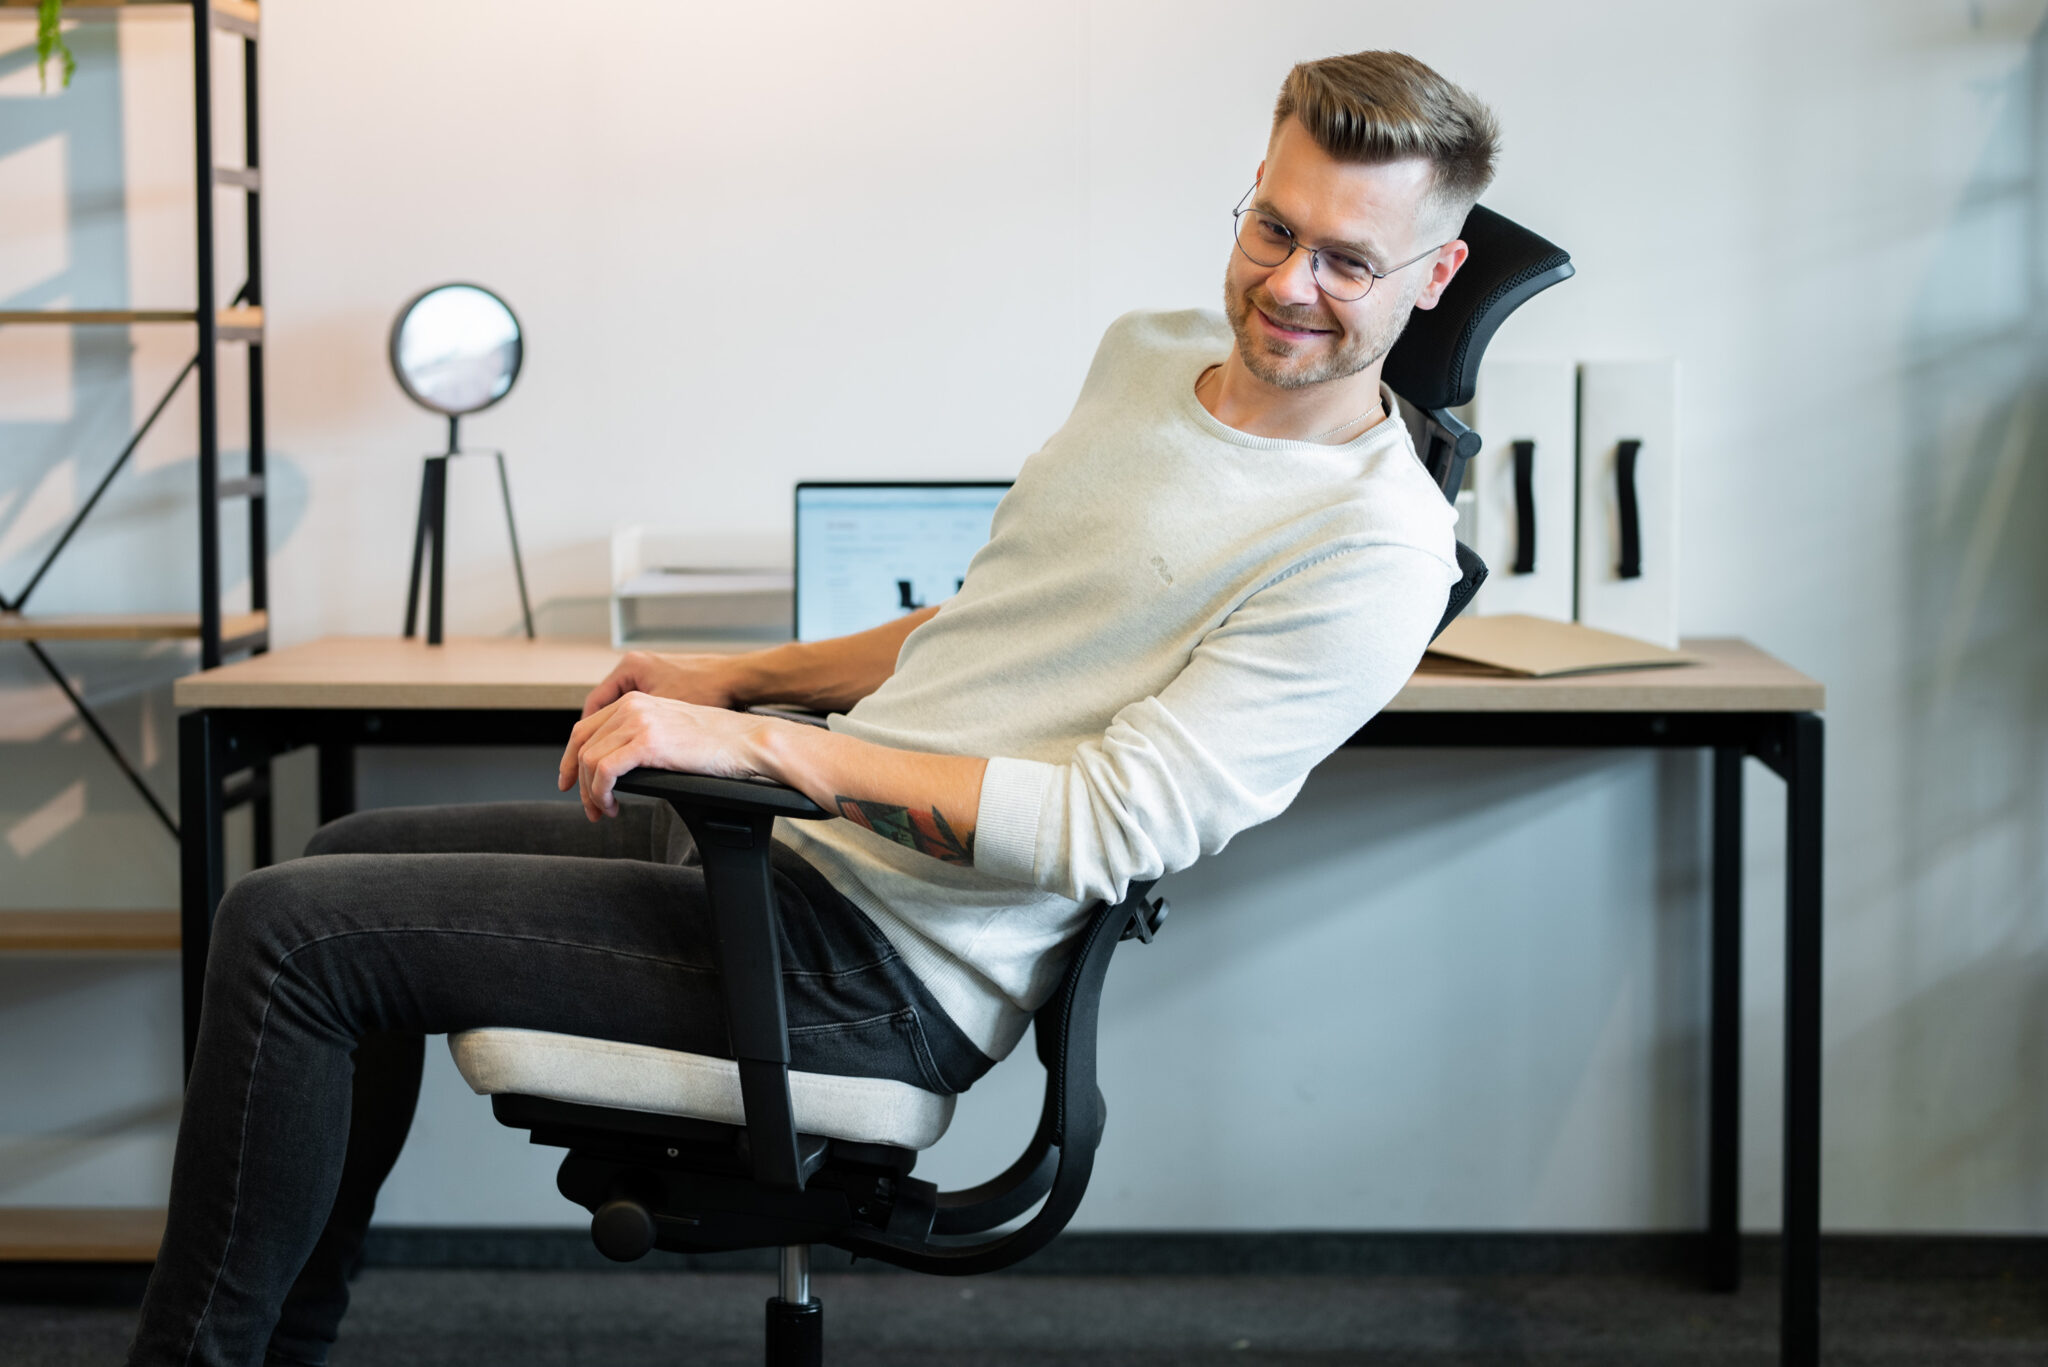 Dla kogo sprawdzi się biurowy fotel ergonomiczny? – wywiad z fizjoterapeutą Piotrem Piaskowskim, twórcą bloga Fizjologika